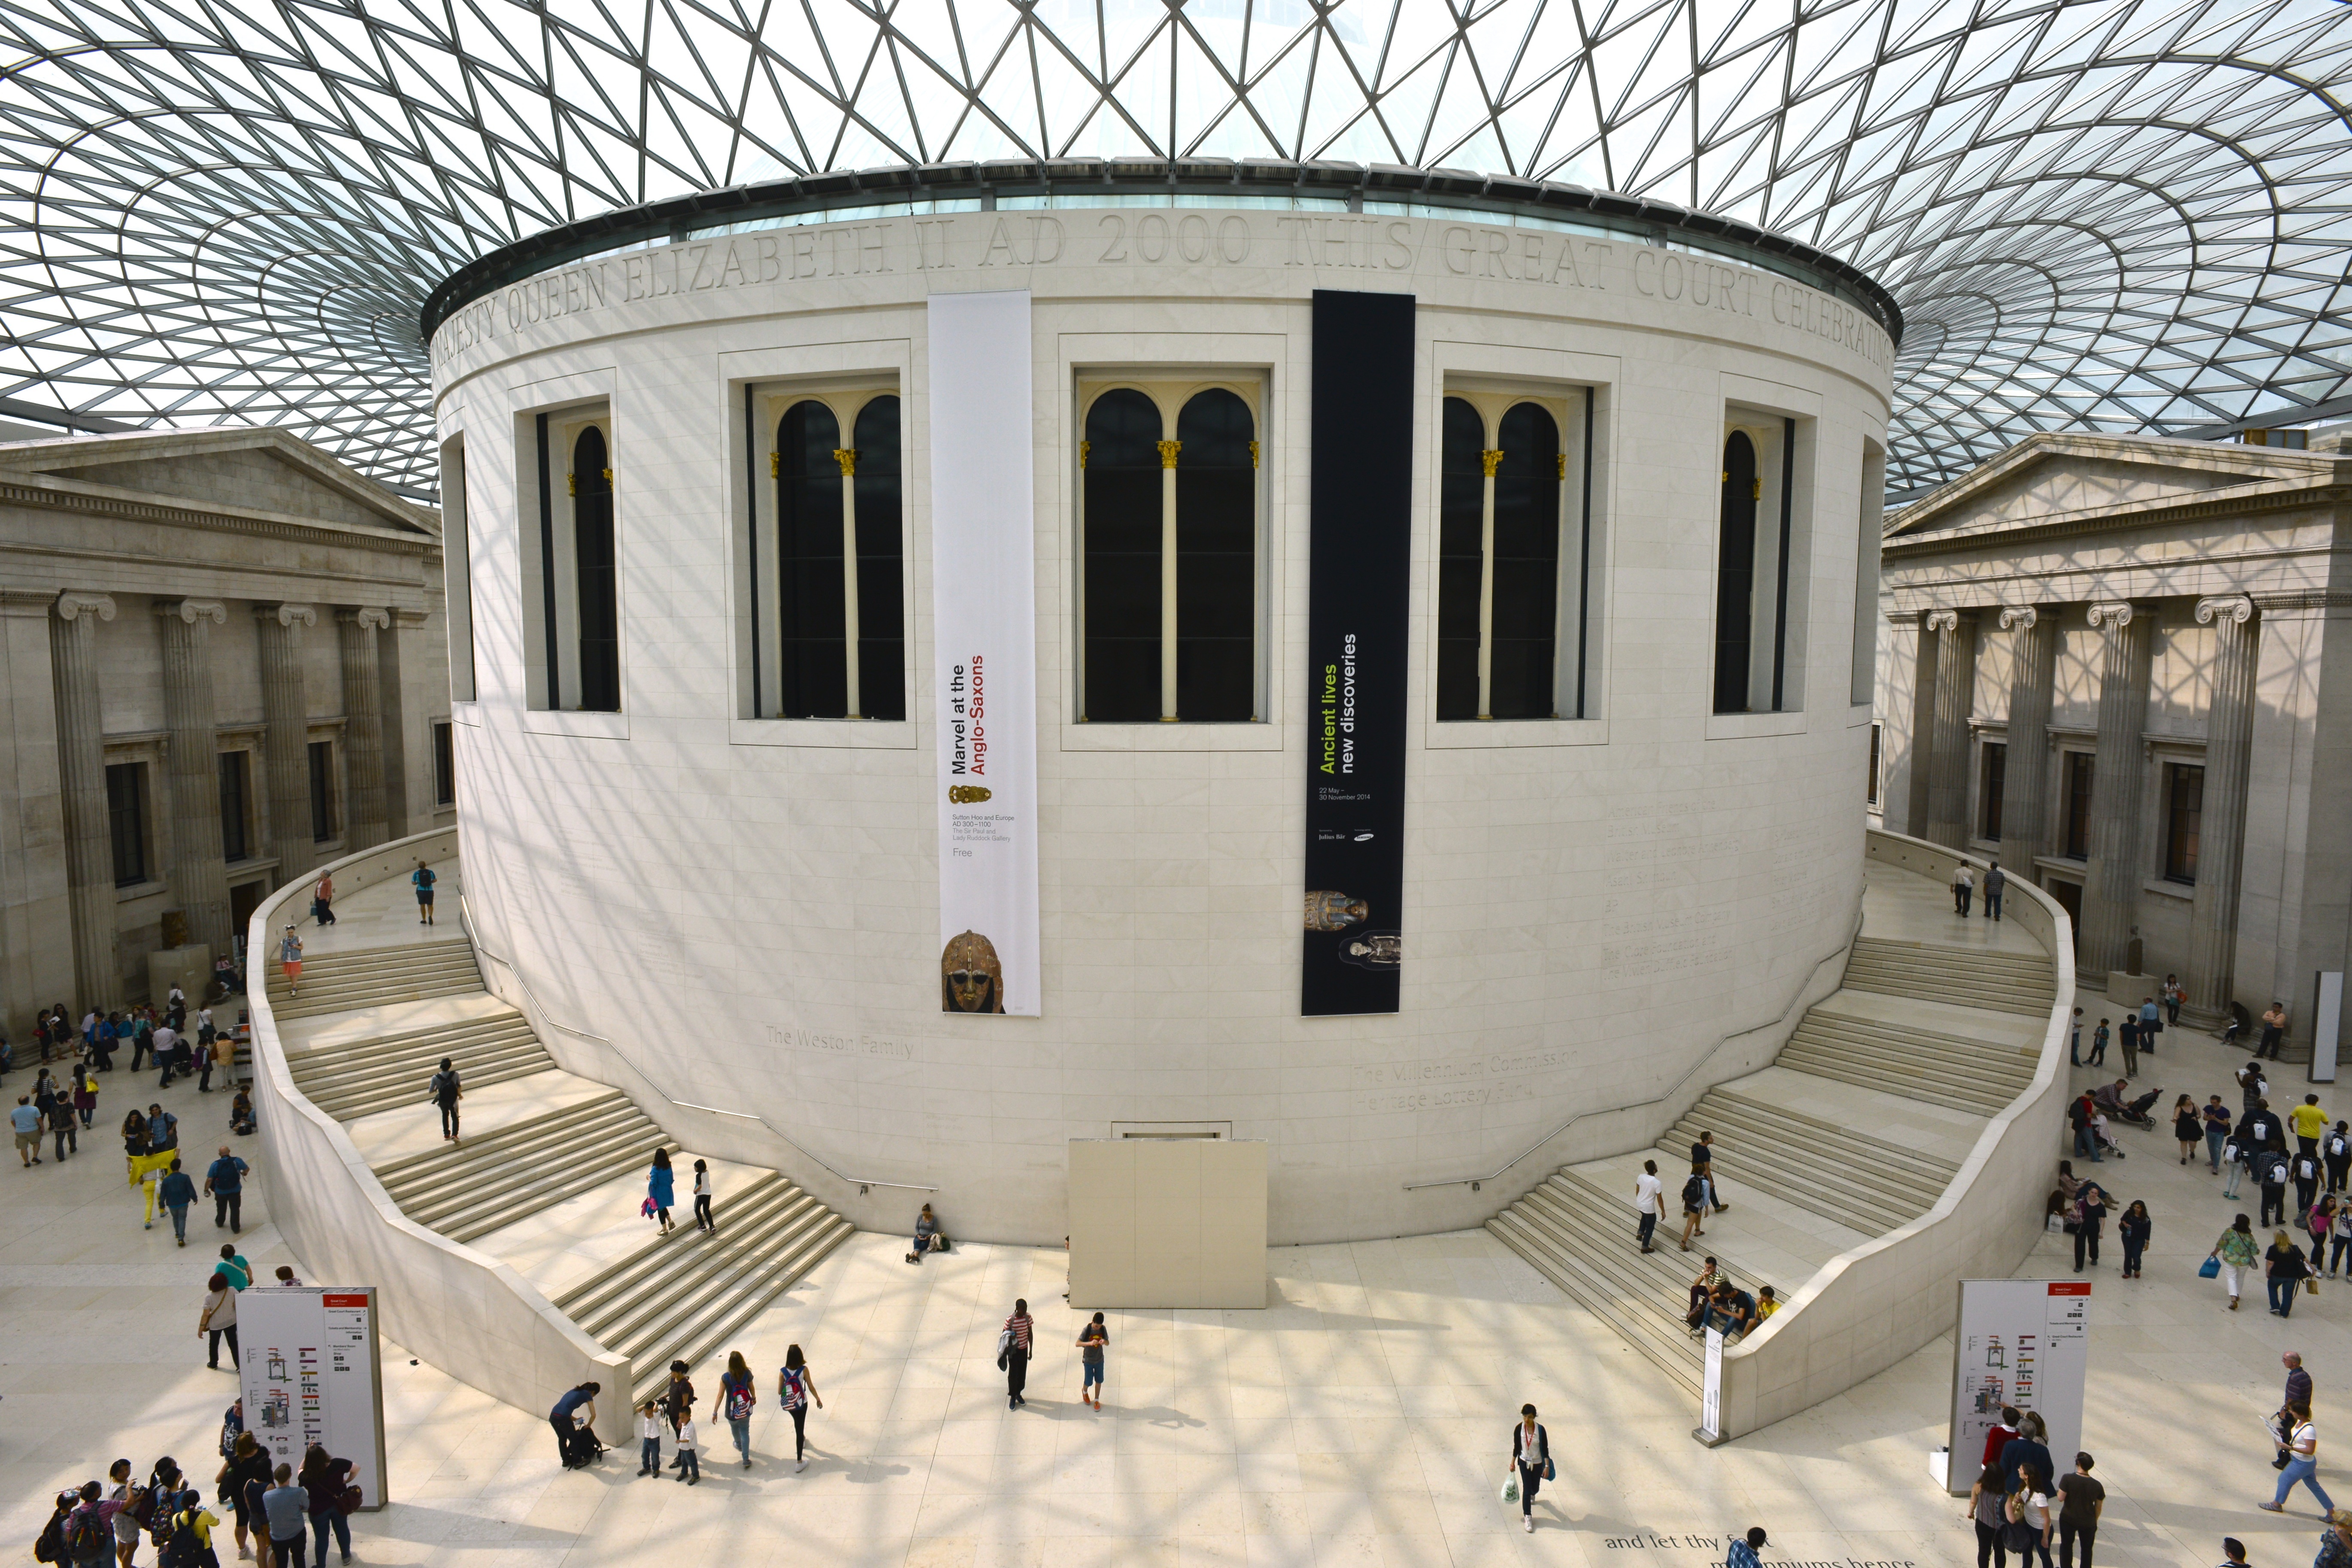 The fascinating British Museum